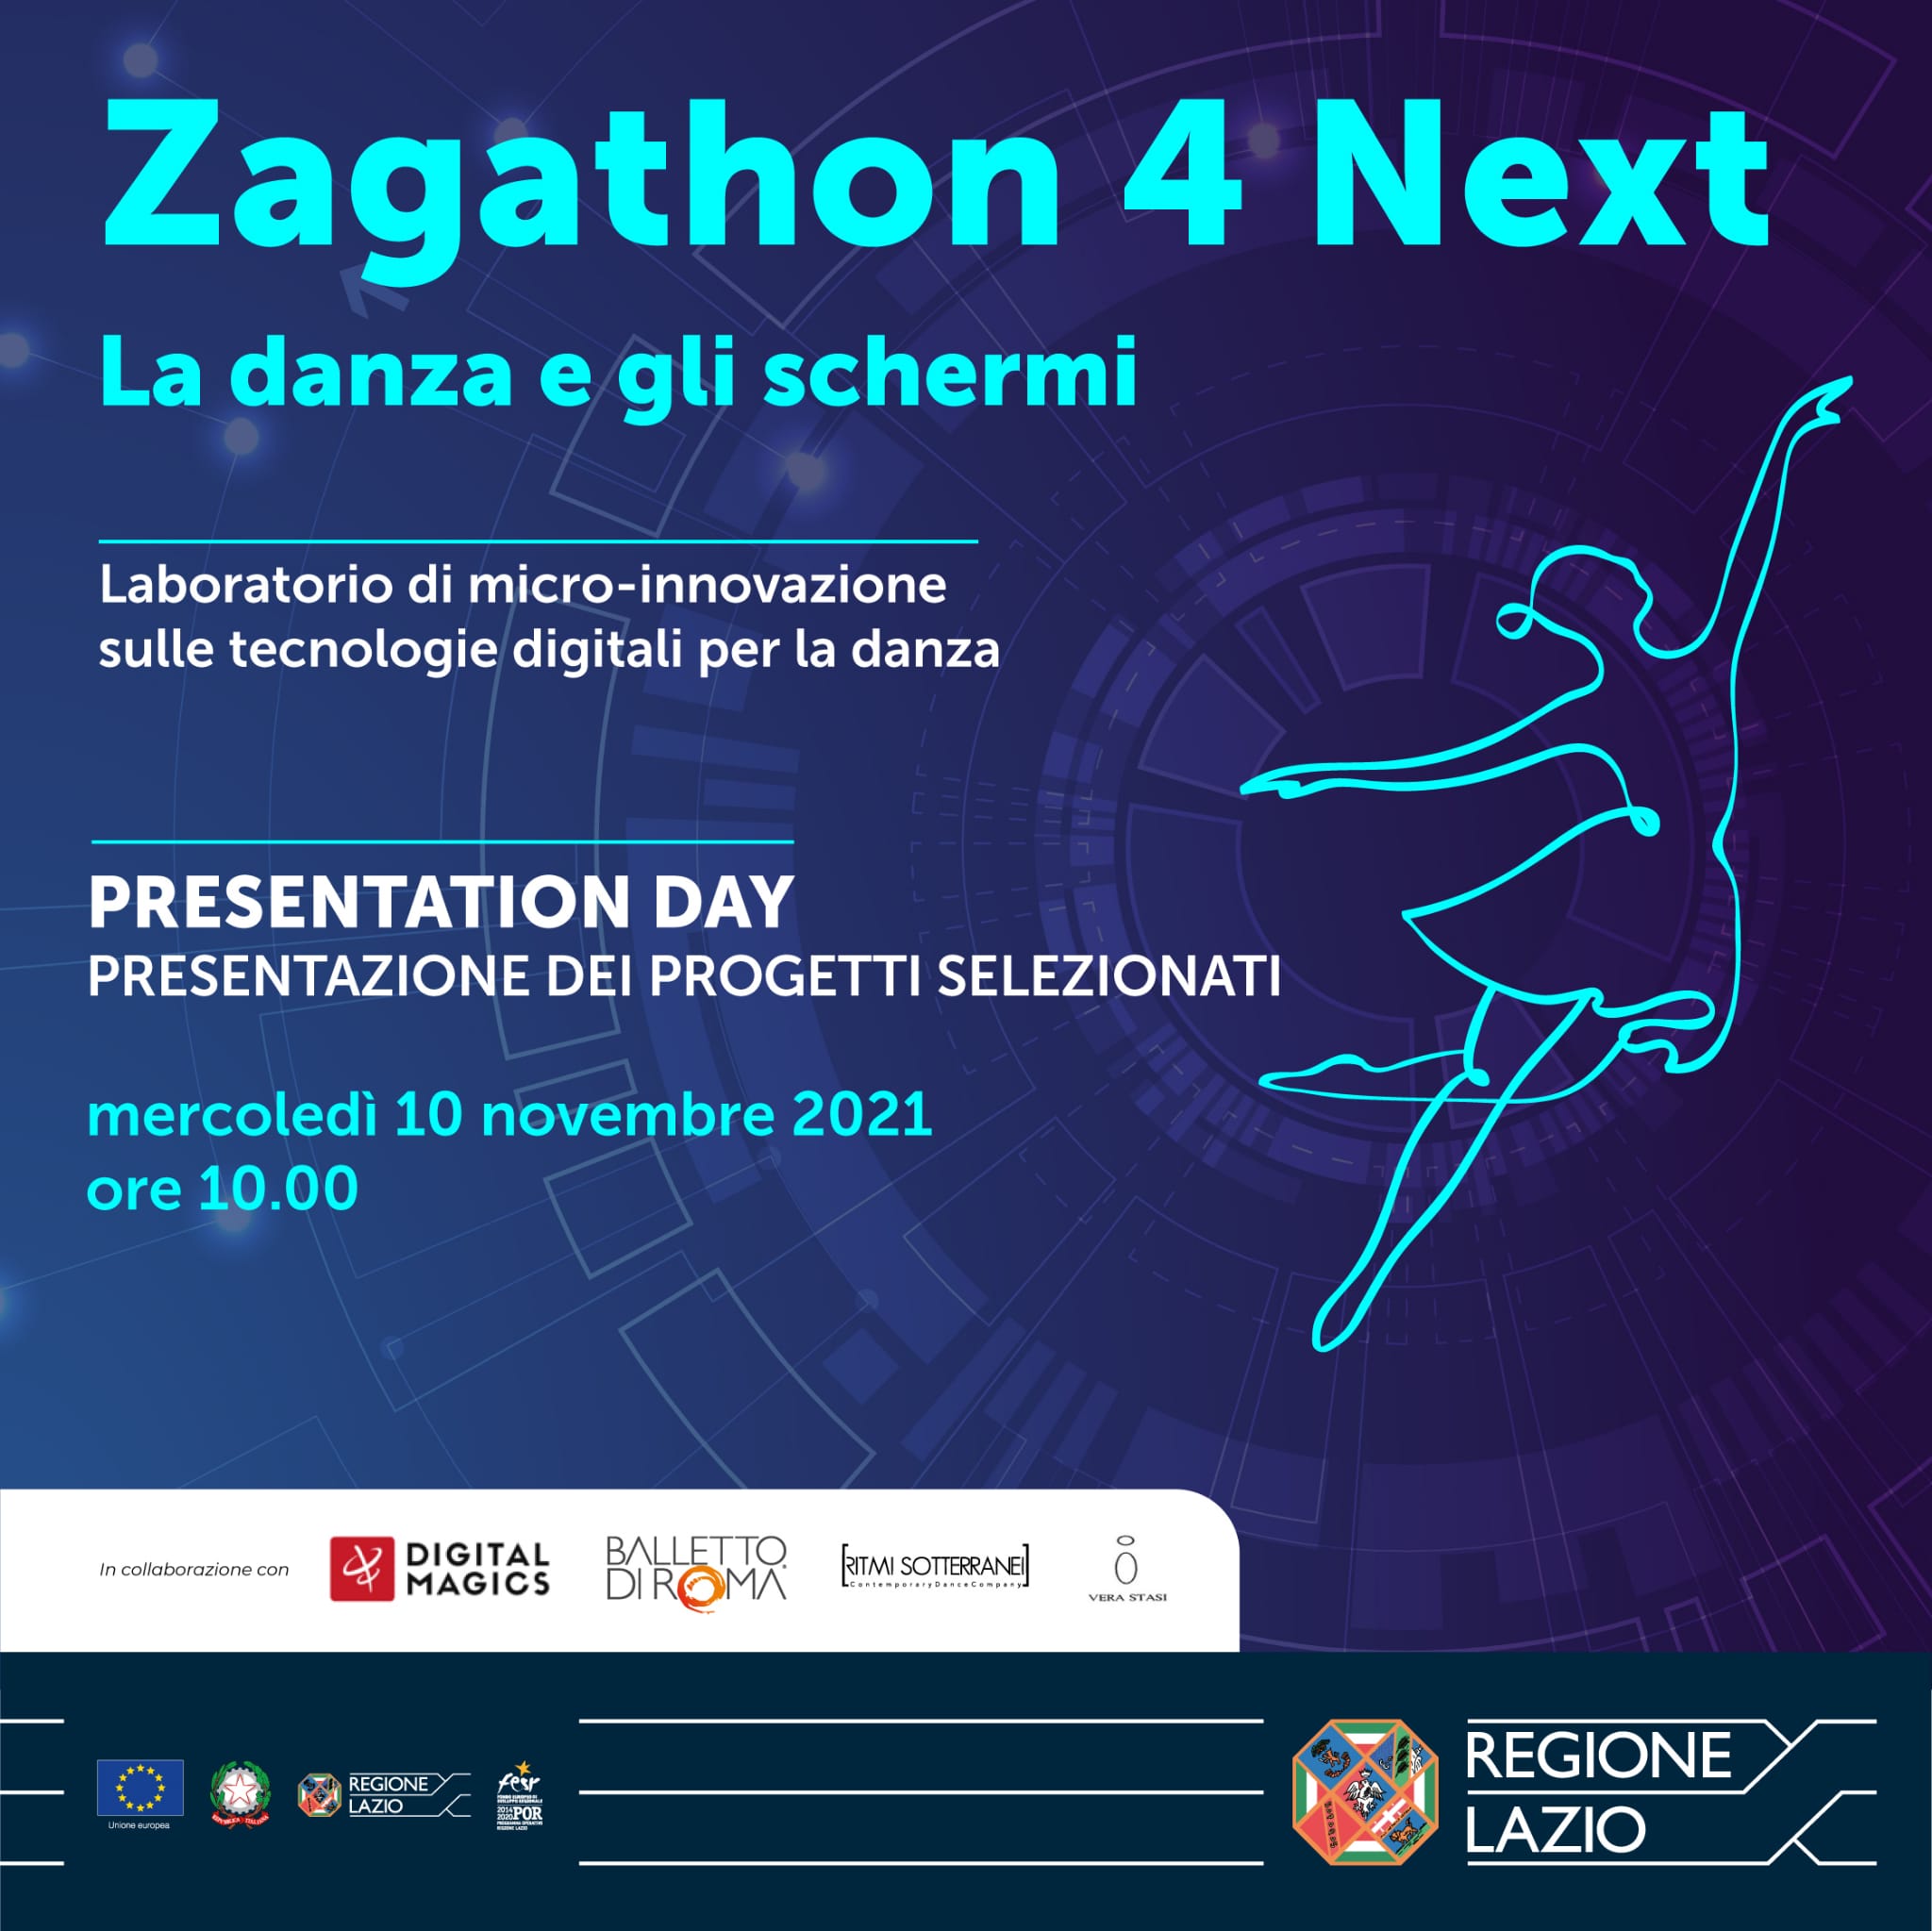 Open Day Zagathon 4 Next La Danza e gli Schermi